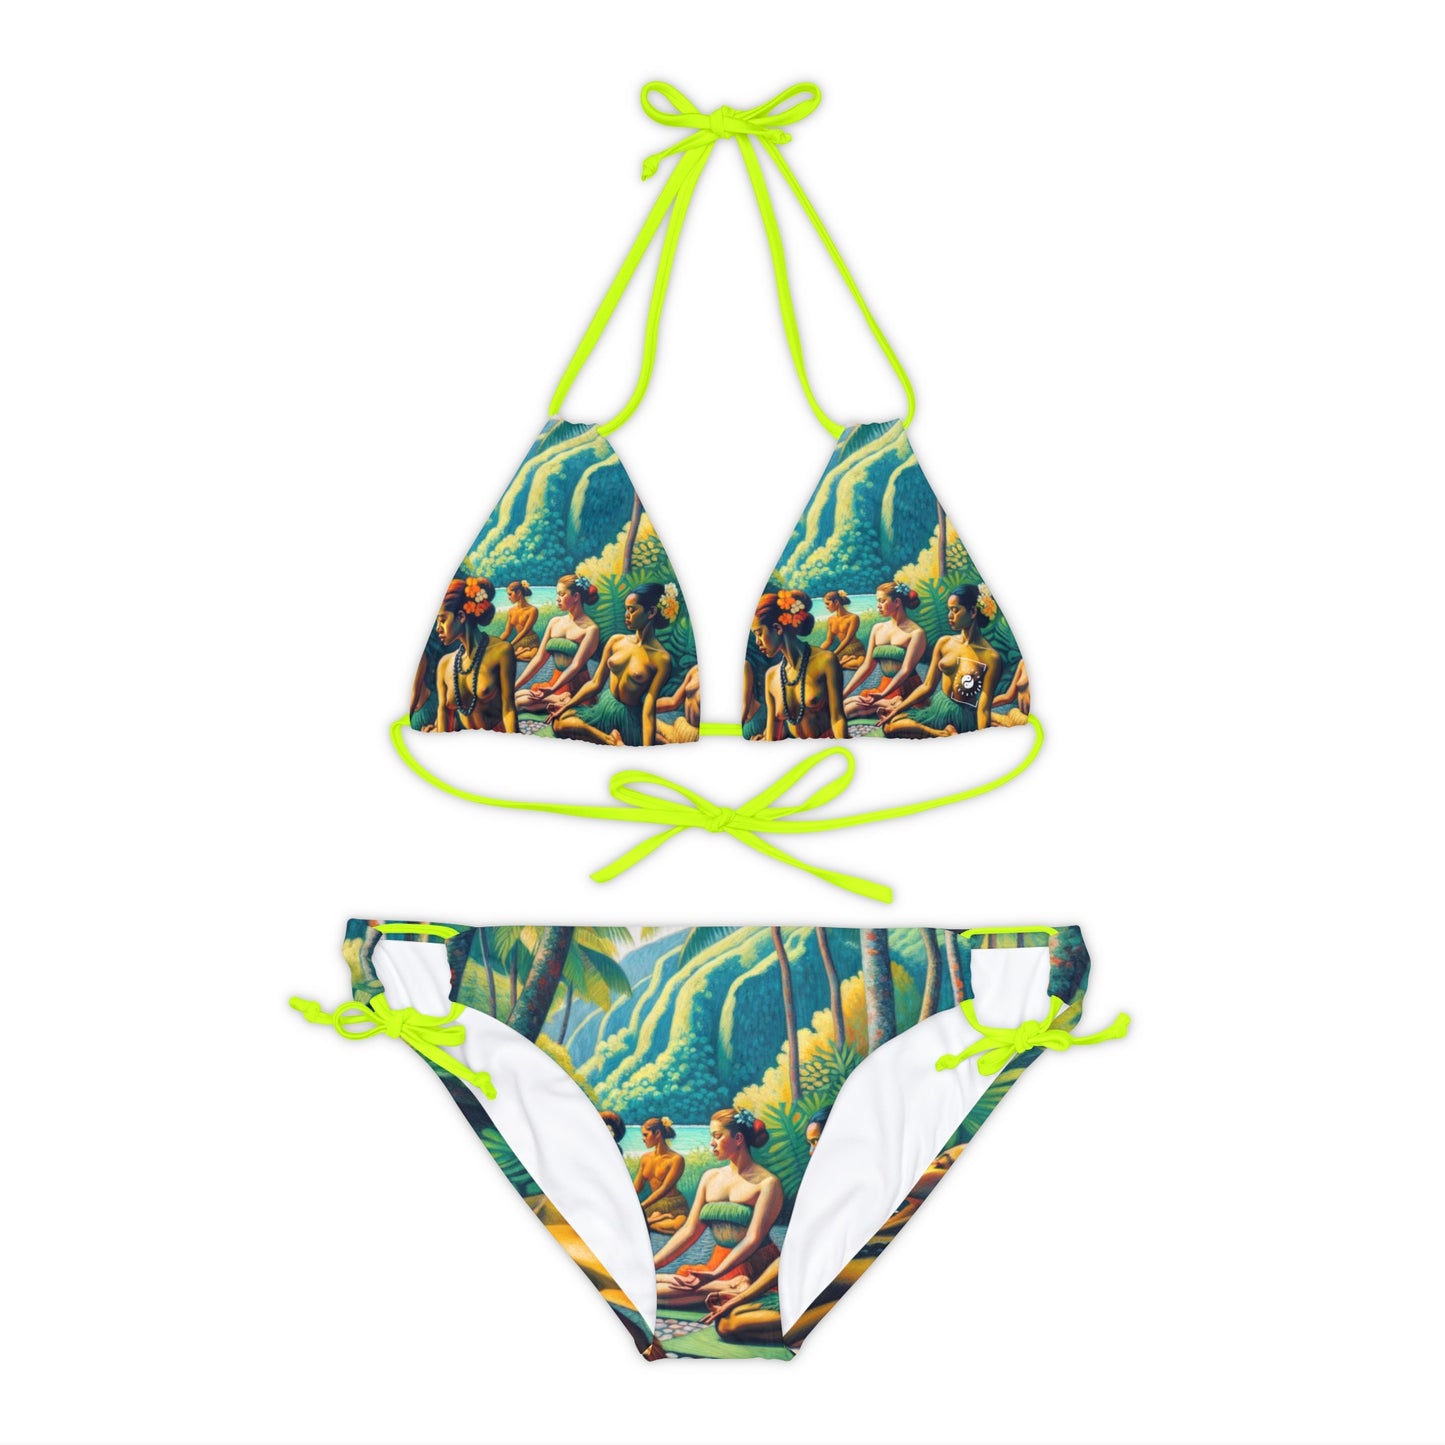 "Tahitian Tranquility - Lace-up Bikini Set